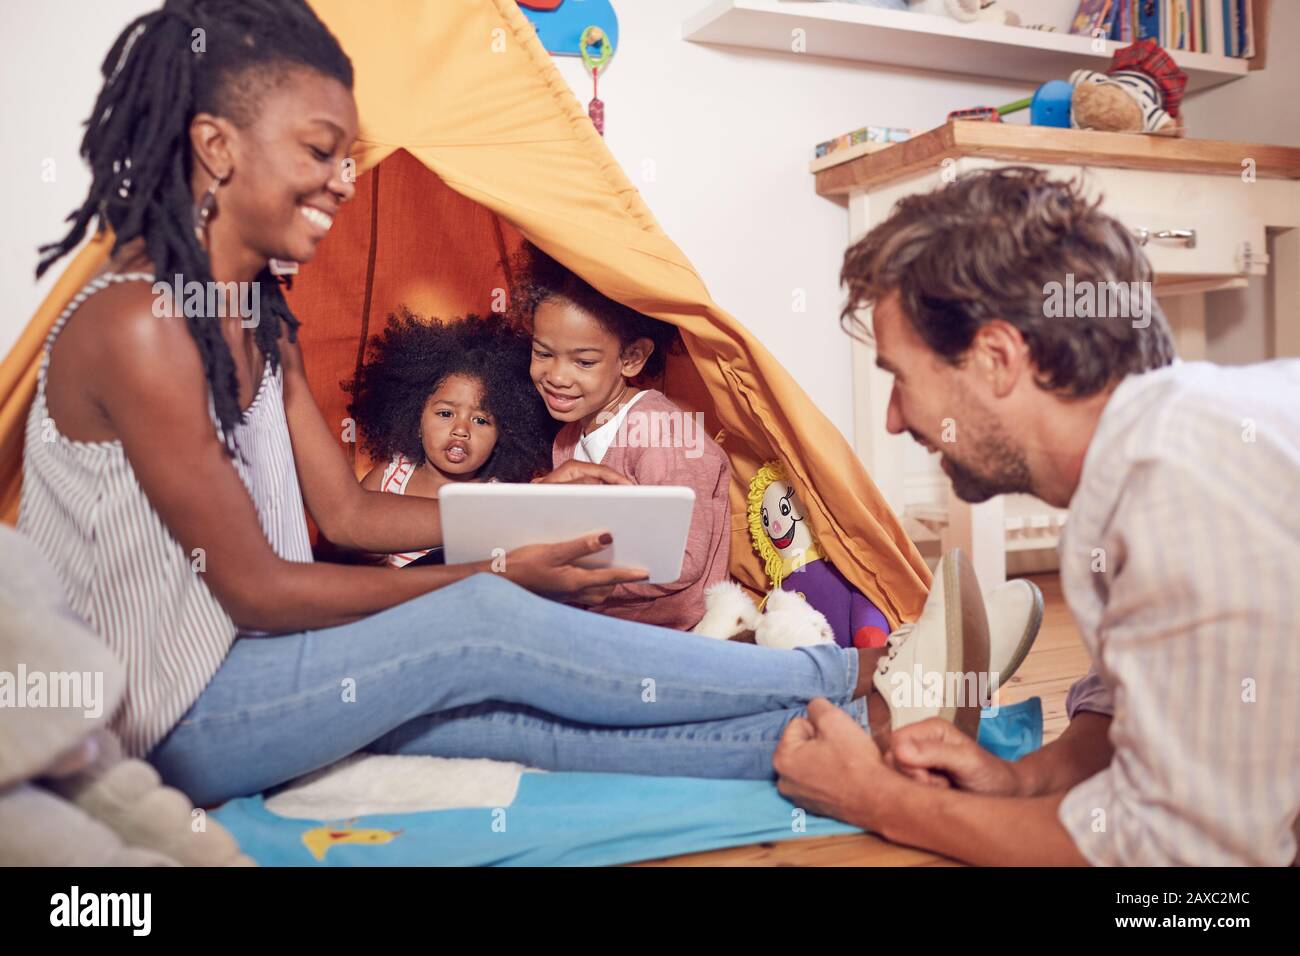 Junge Familie mit digitalem Tablet auf Teepee Stockfoto